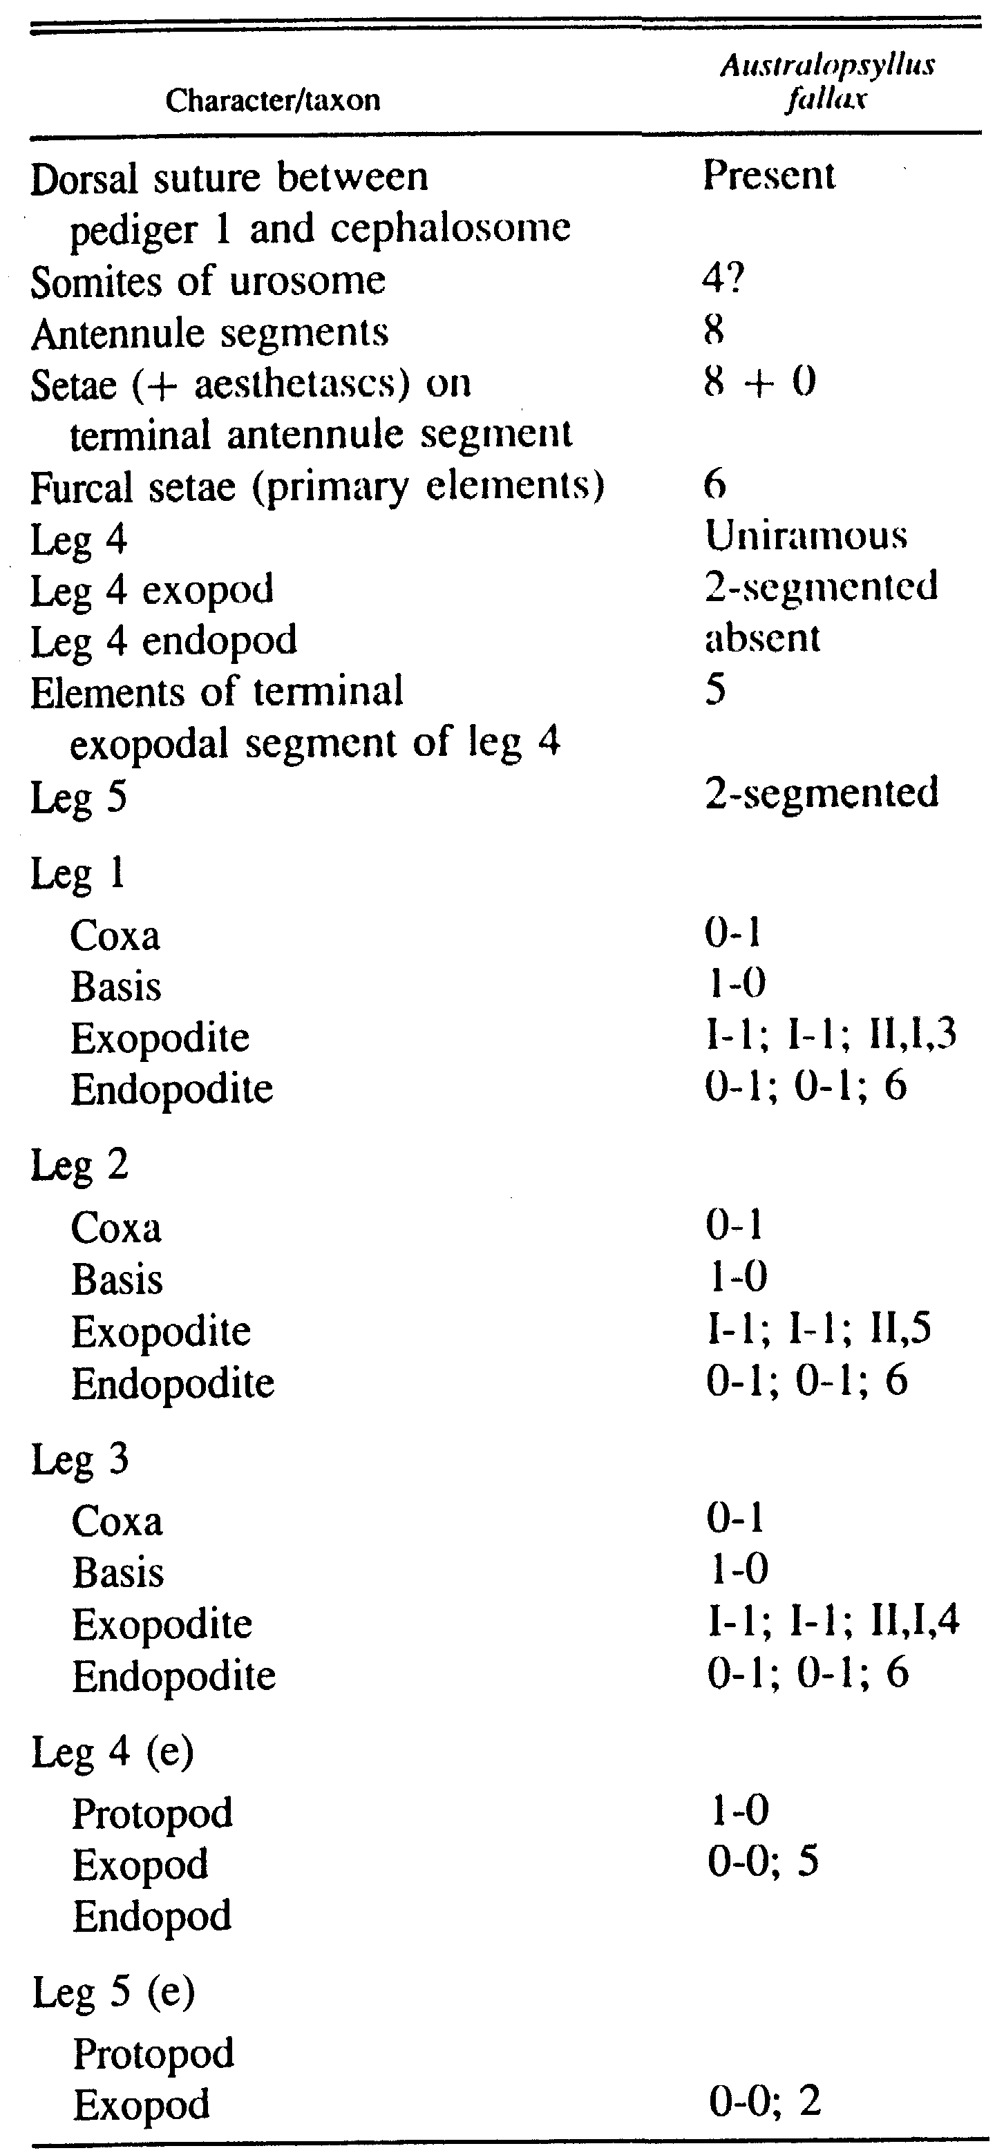 Espce Caribeopsyllus chawayi - Planche 4 de figures morphologiques